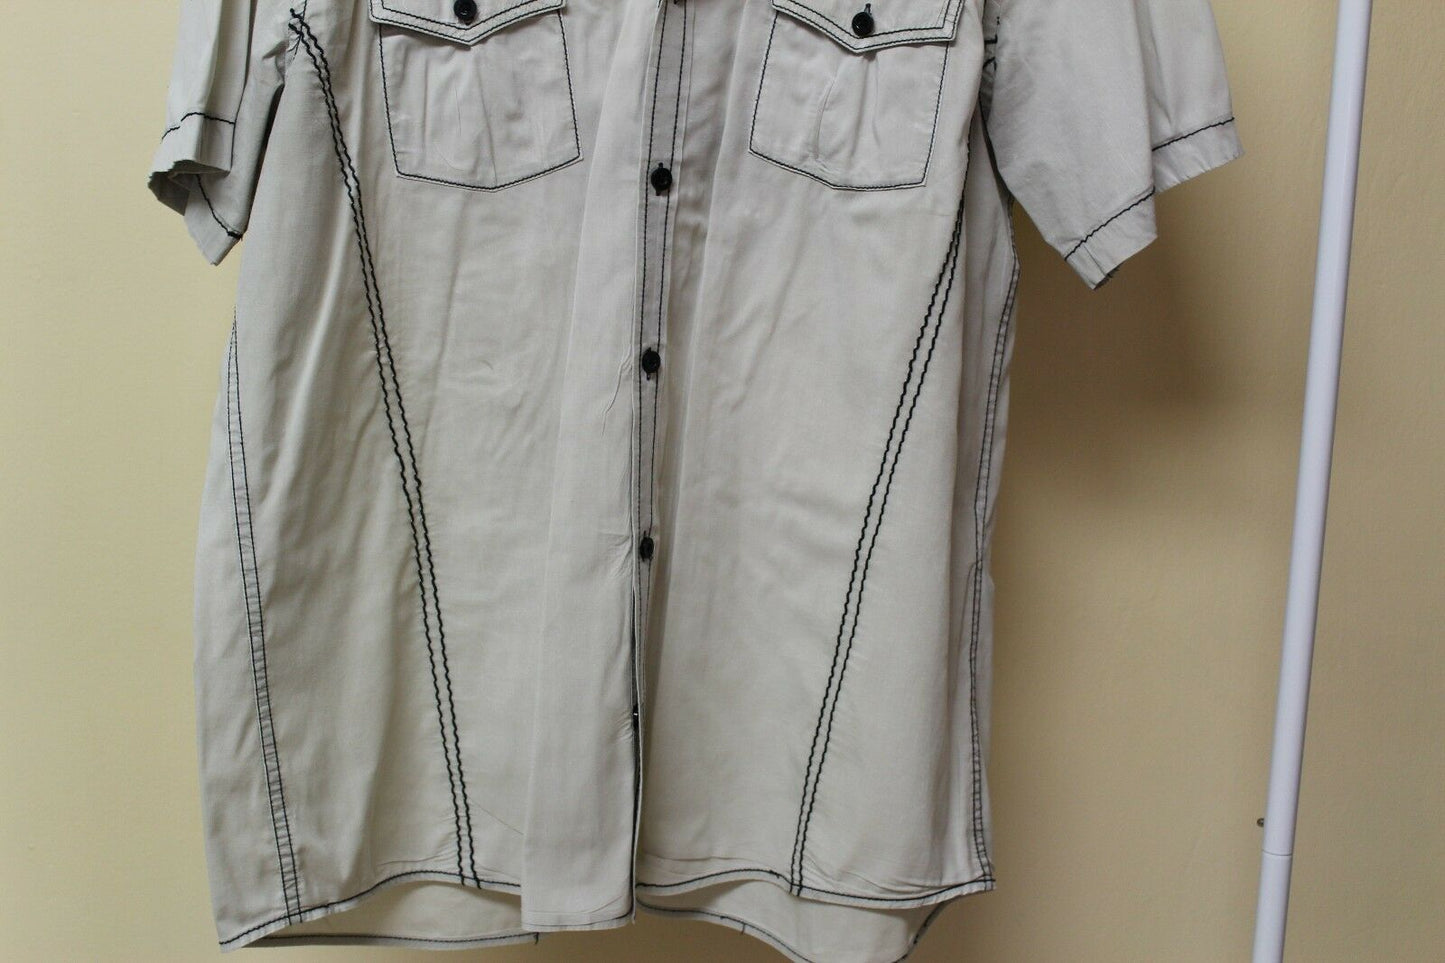 Men's Roar Signature Tan Short Sleeve Button Up Shirt Size Medium